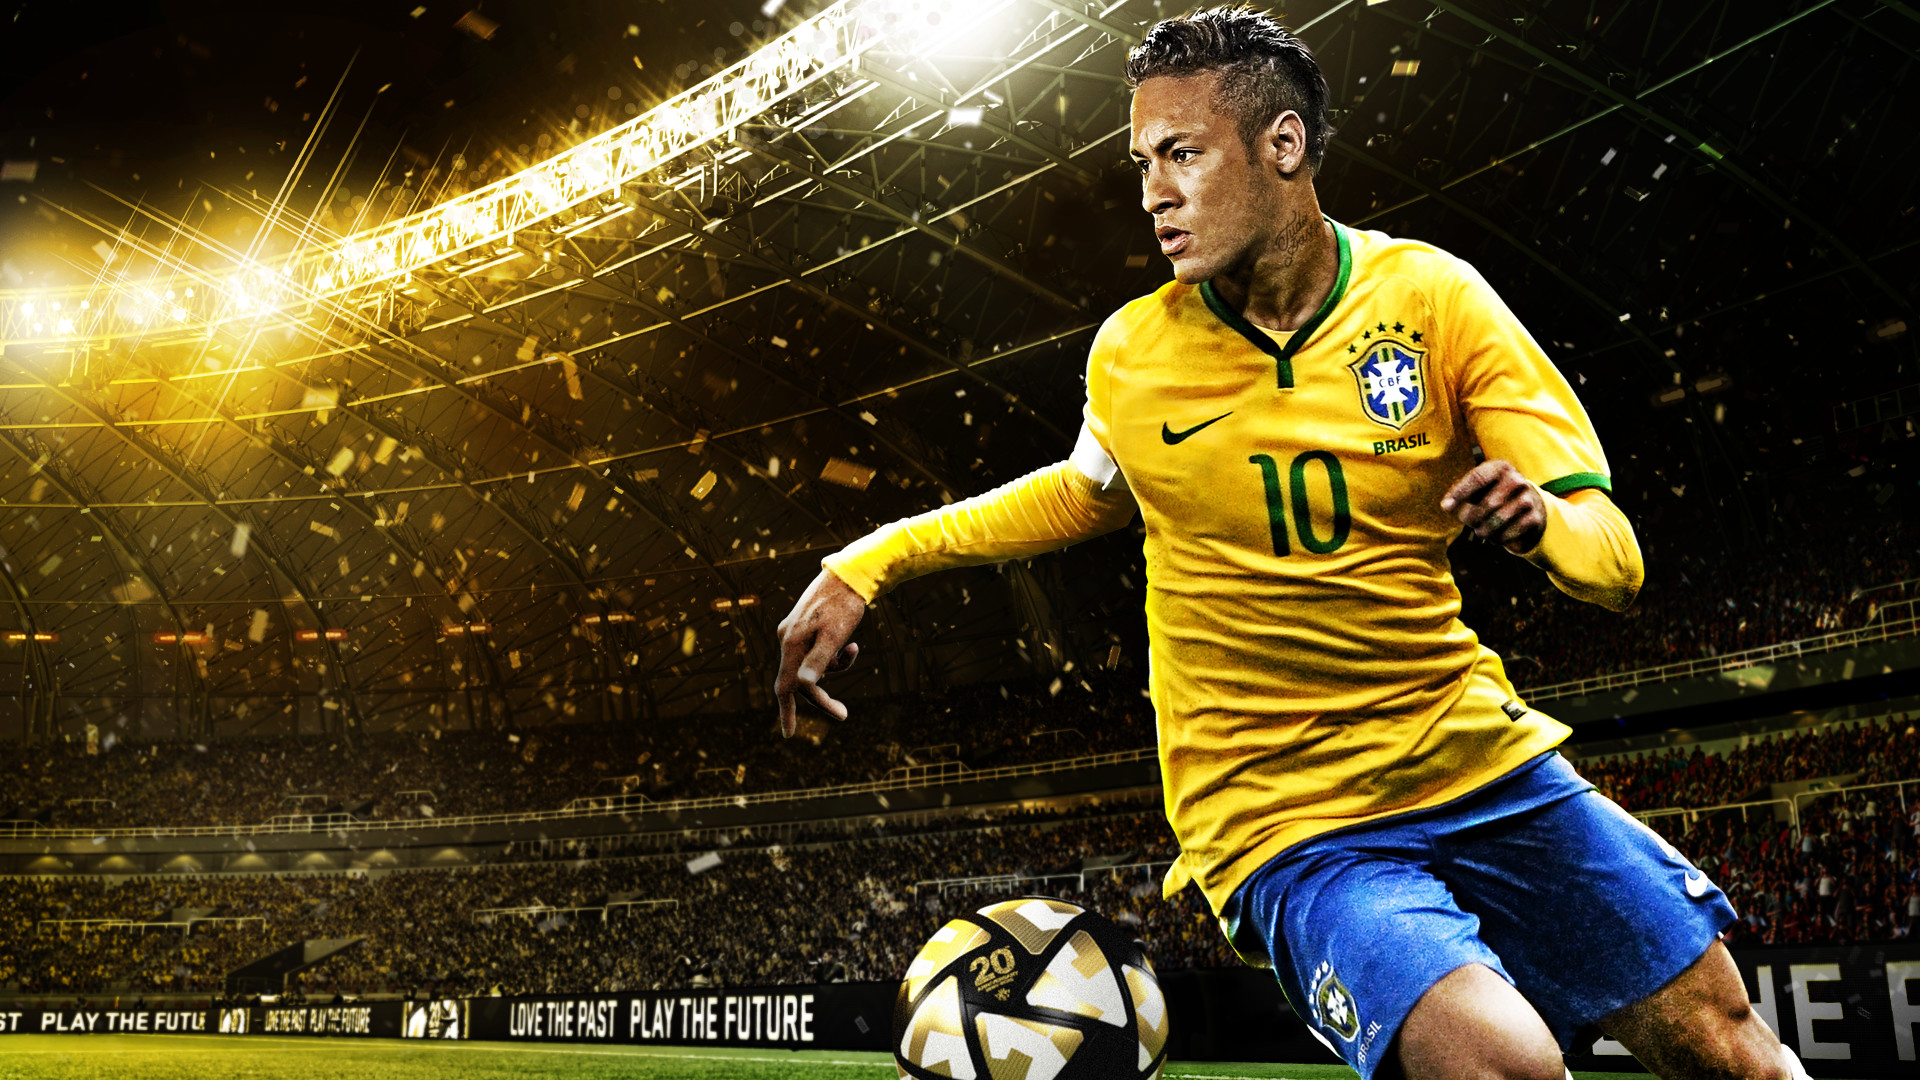 neymar hd wallpaper download,player,football player,team sport,ball game,soccer player